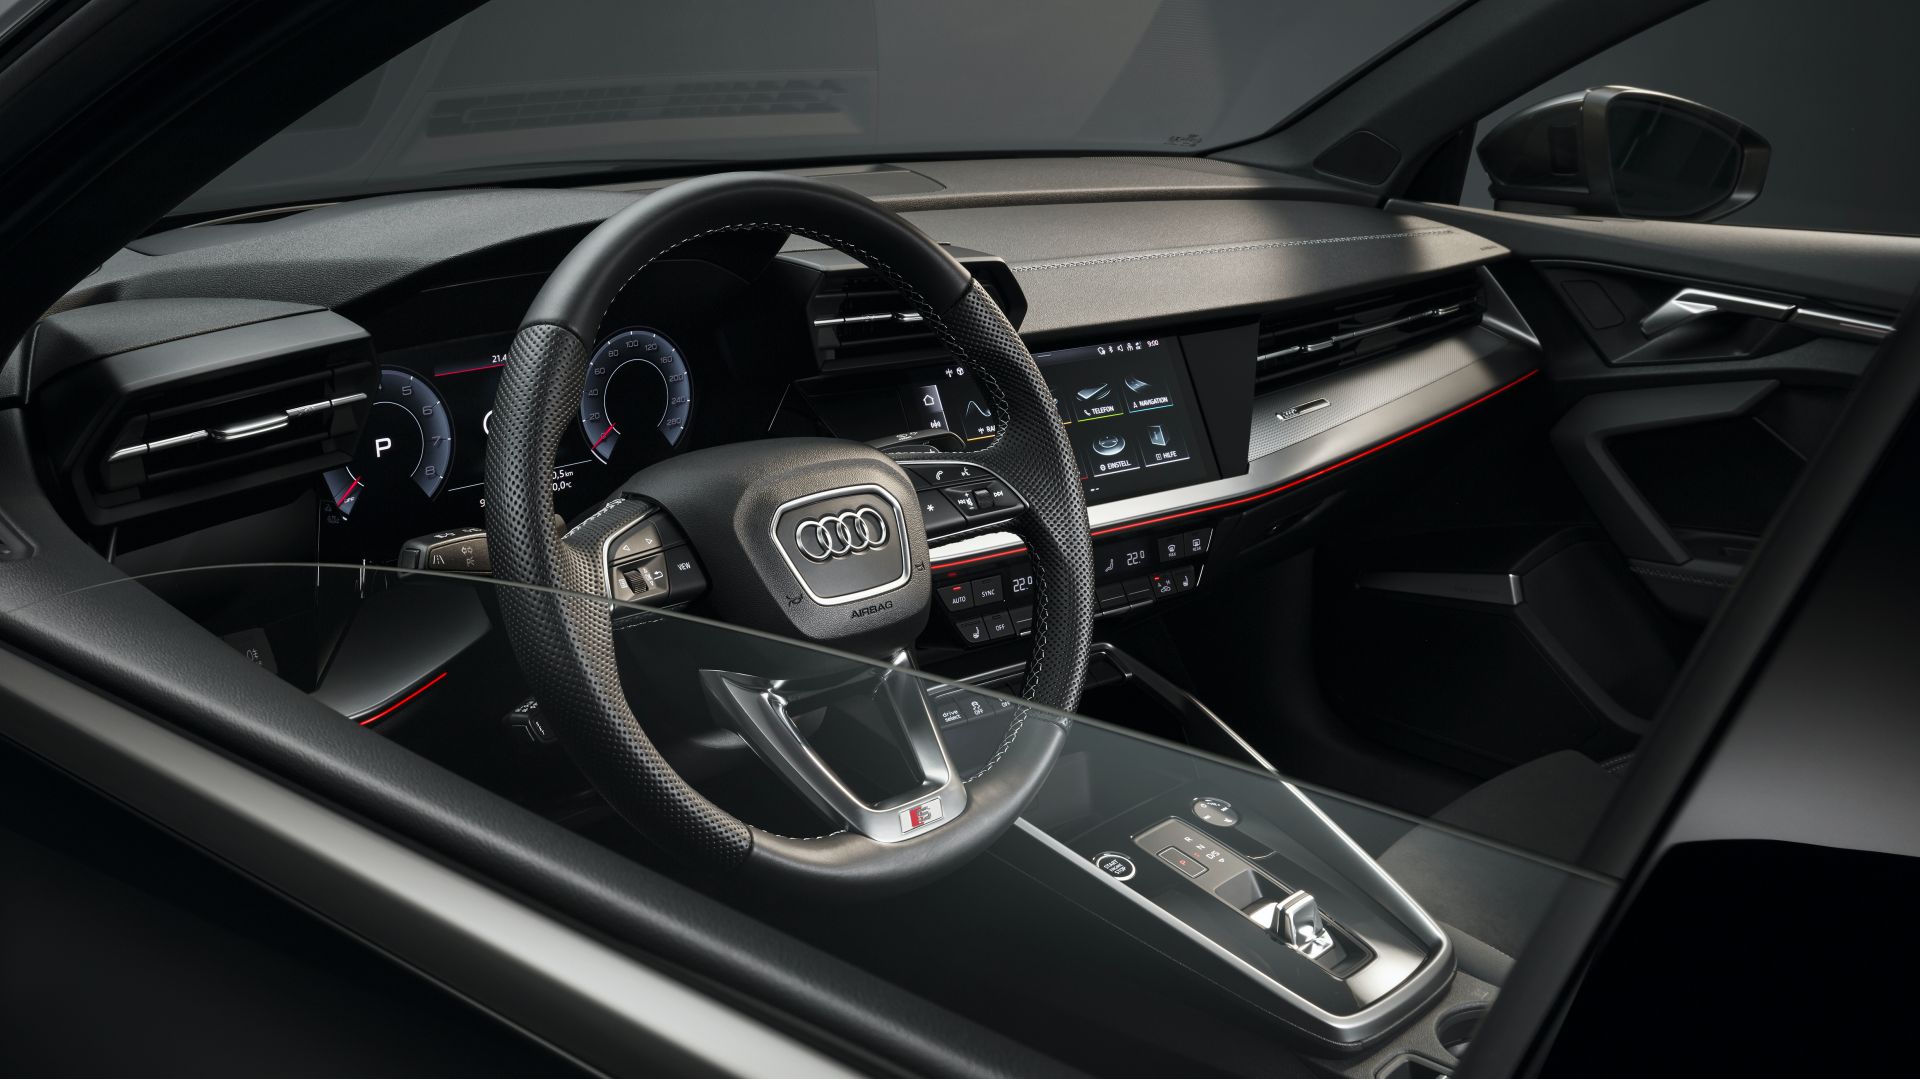 2020 Audi A3 Sedan tanıtıldı: Yeni tasarım ve gelişmiş teknolojiler